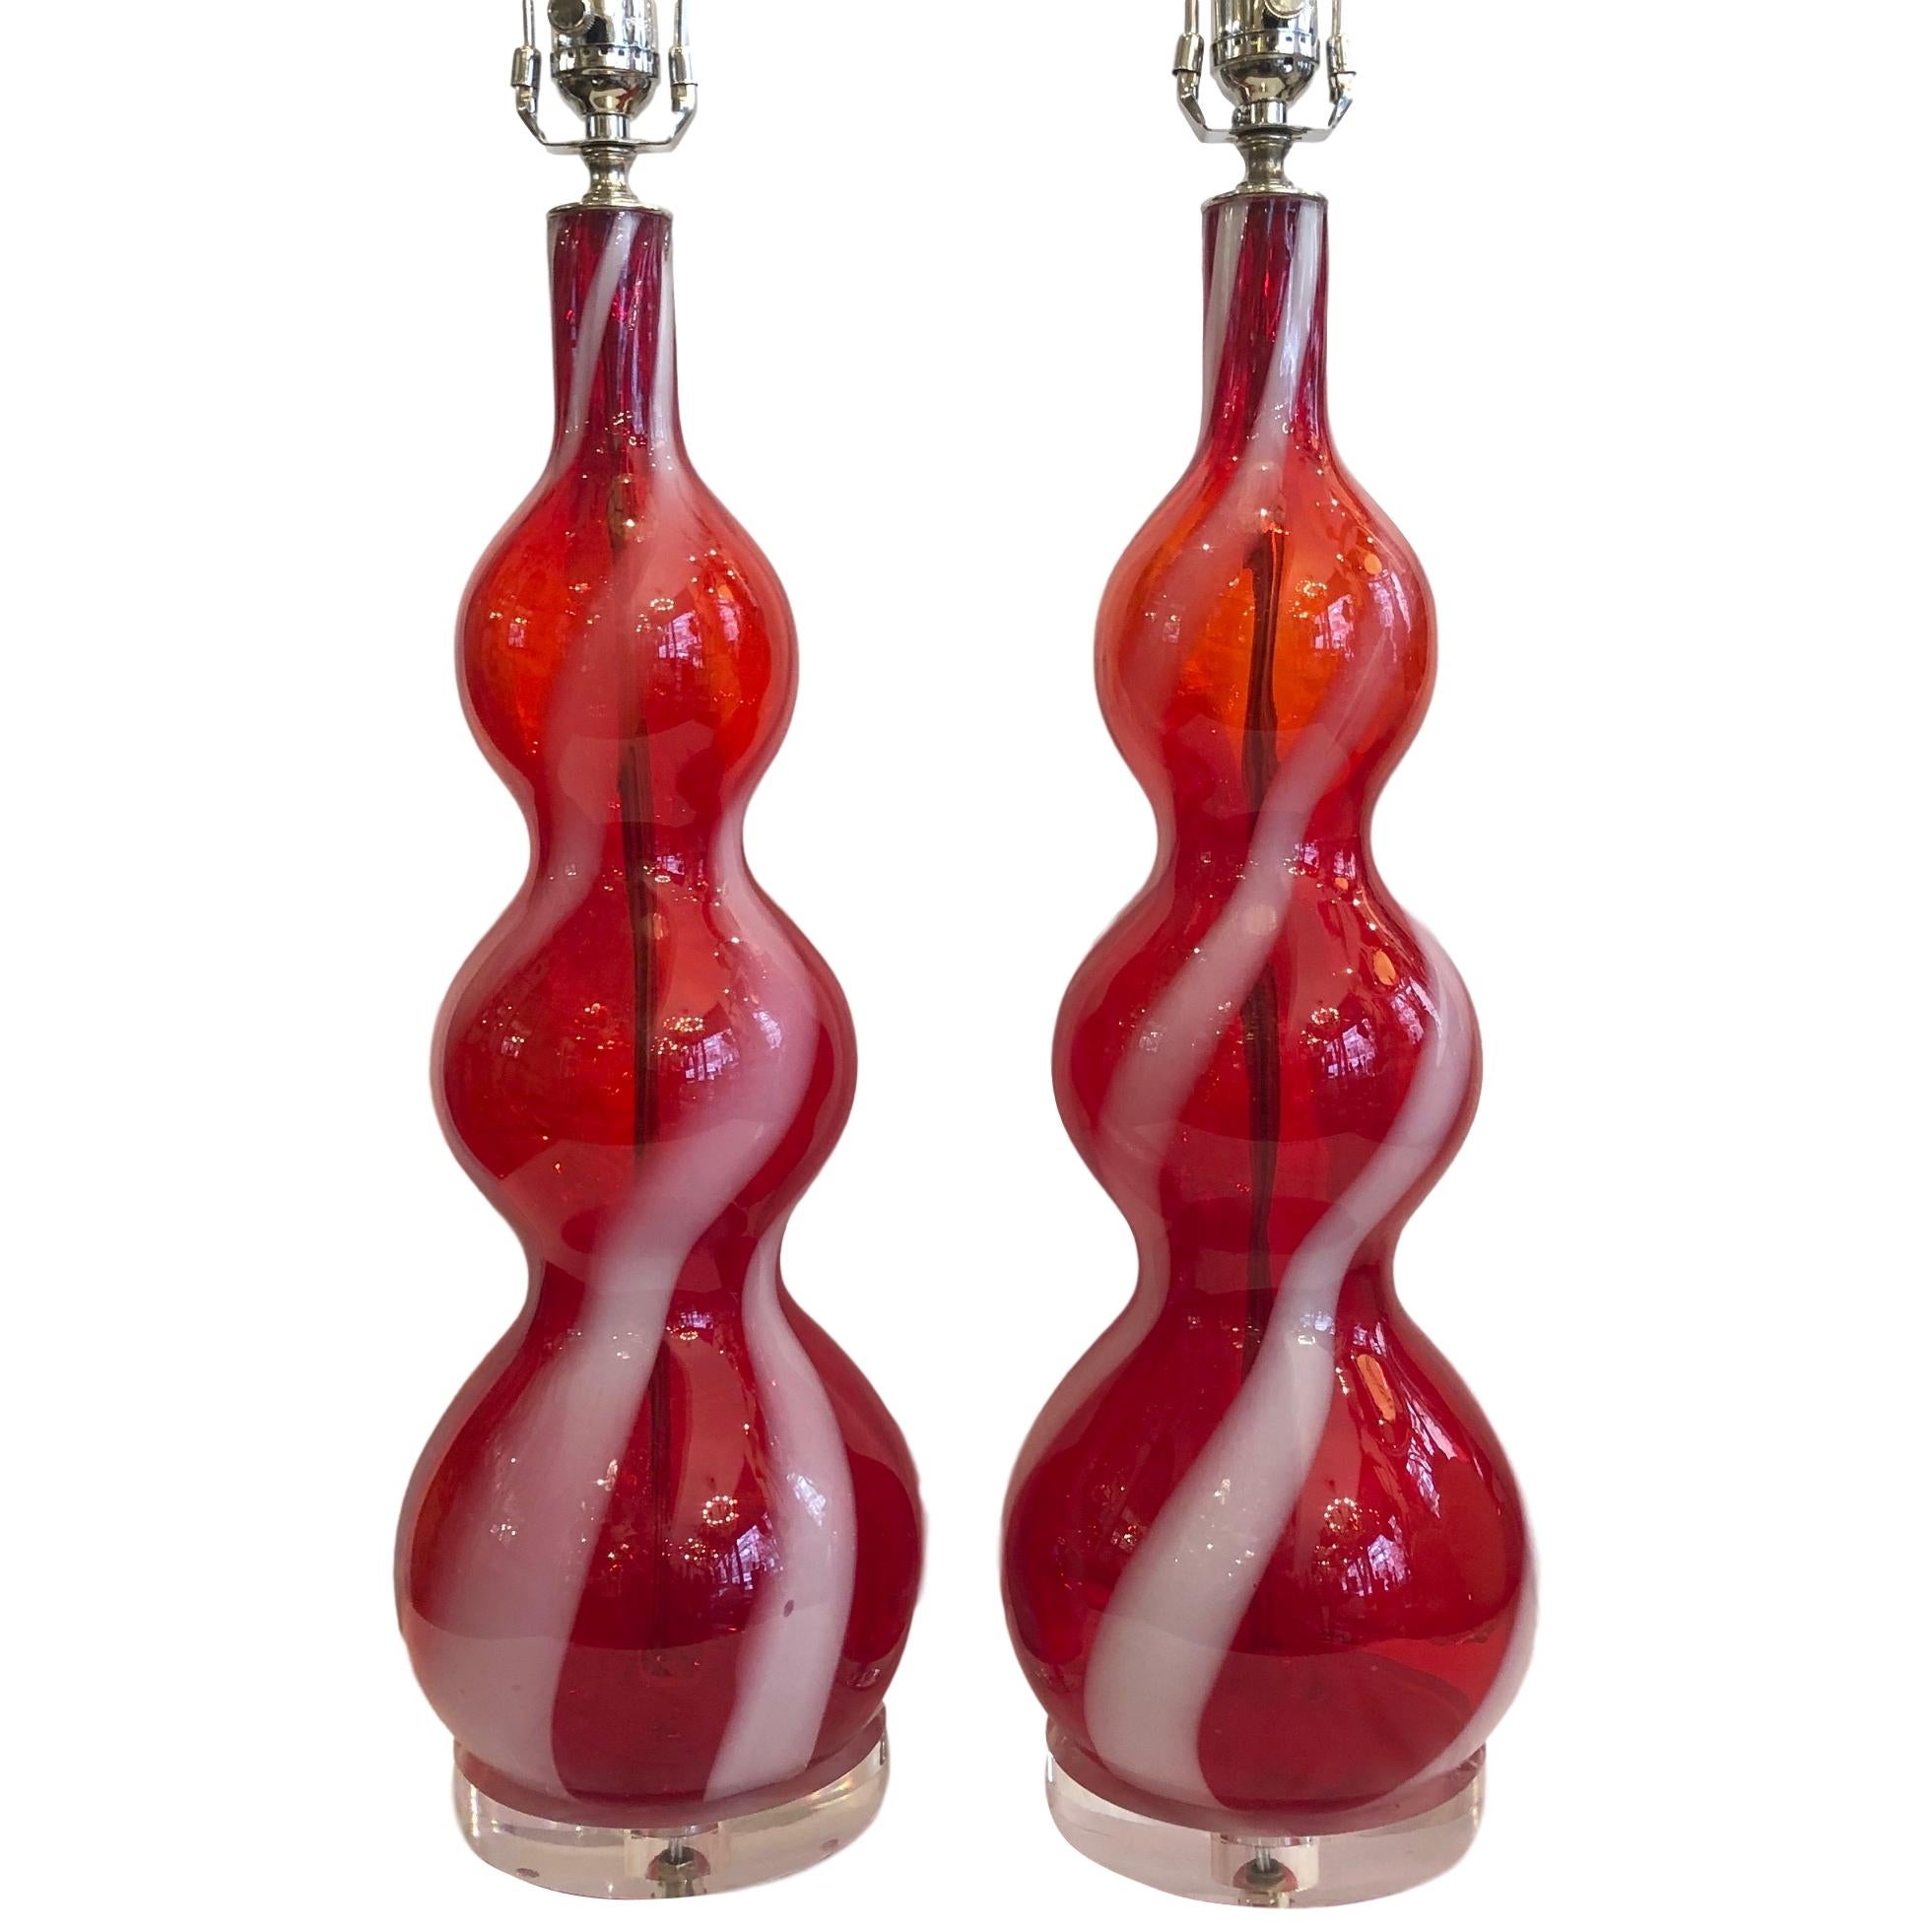 Paire de lampes Murano des années 1960, soufflées à la main, en rouge avec des rubans blancs.

Mesures :
Hauteur du corps 22,5
Diamètre de la base 6